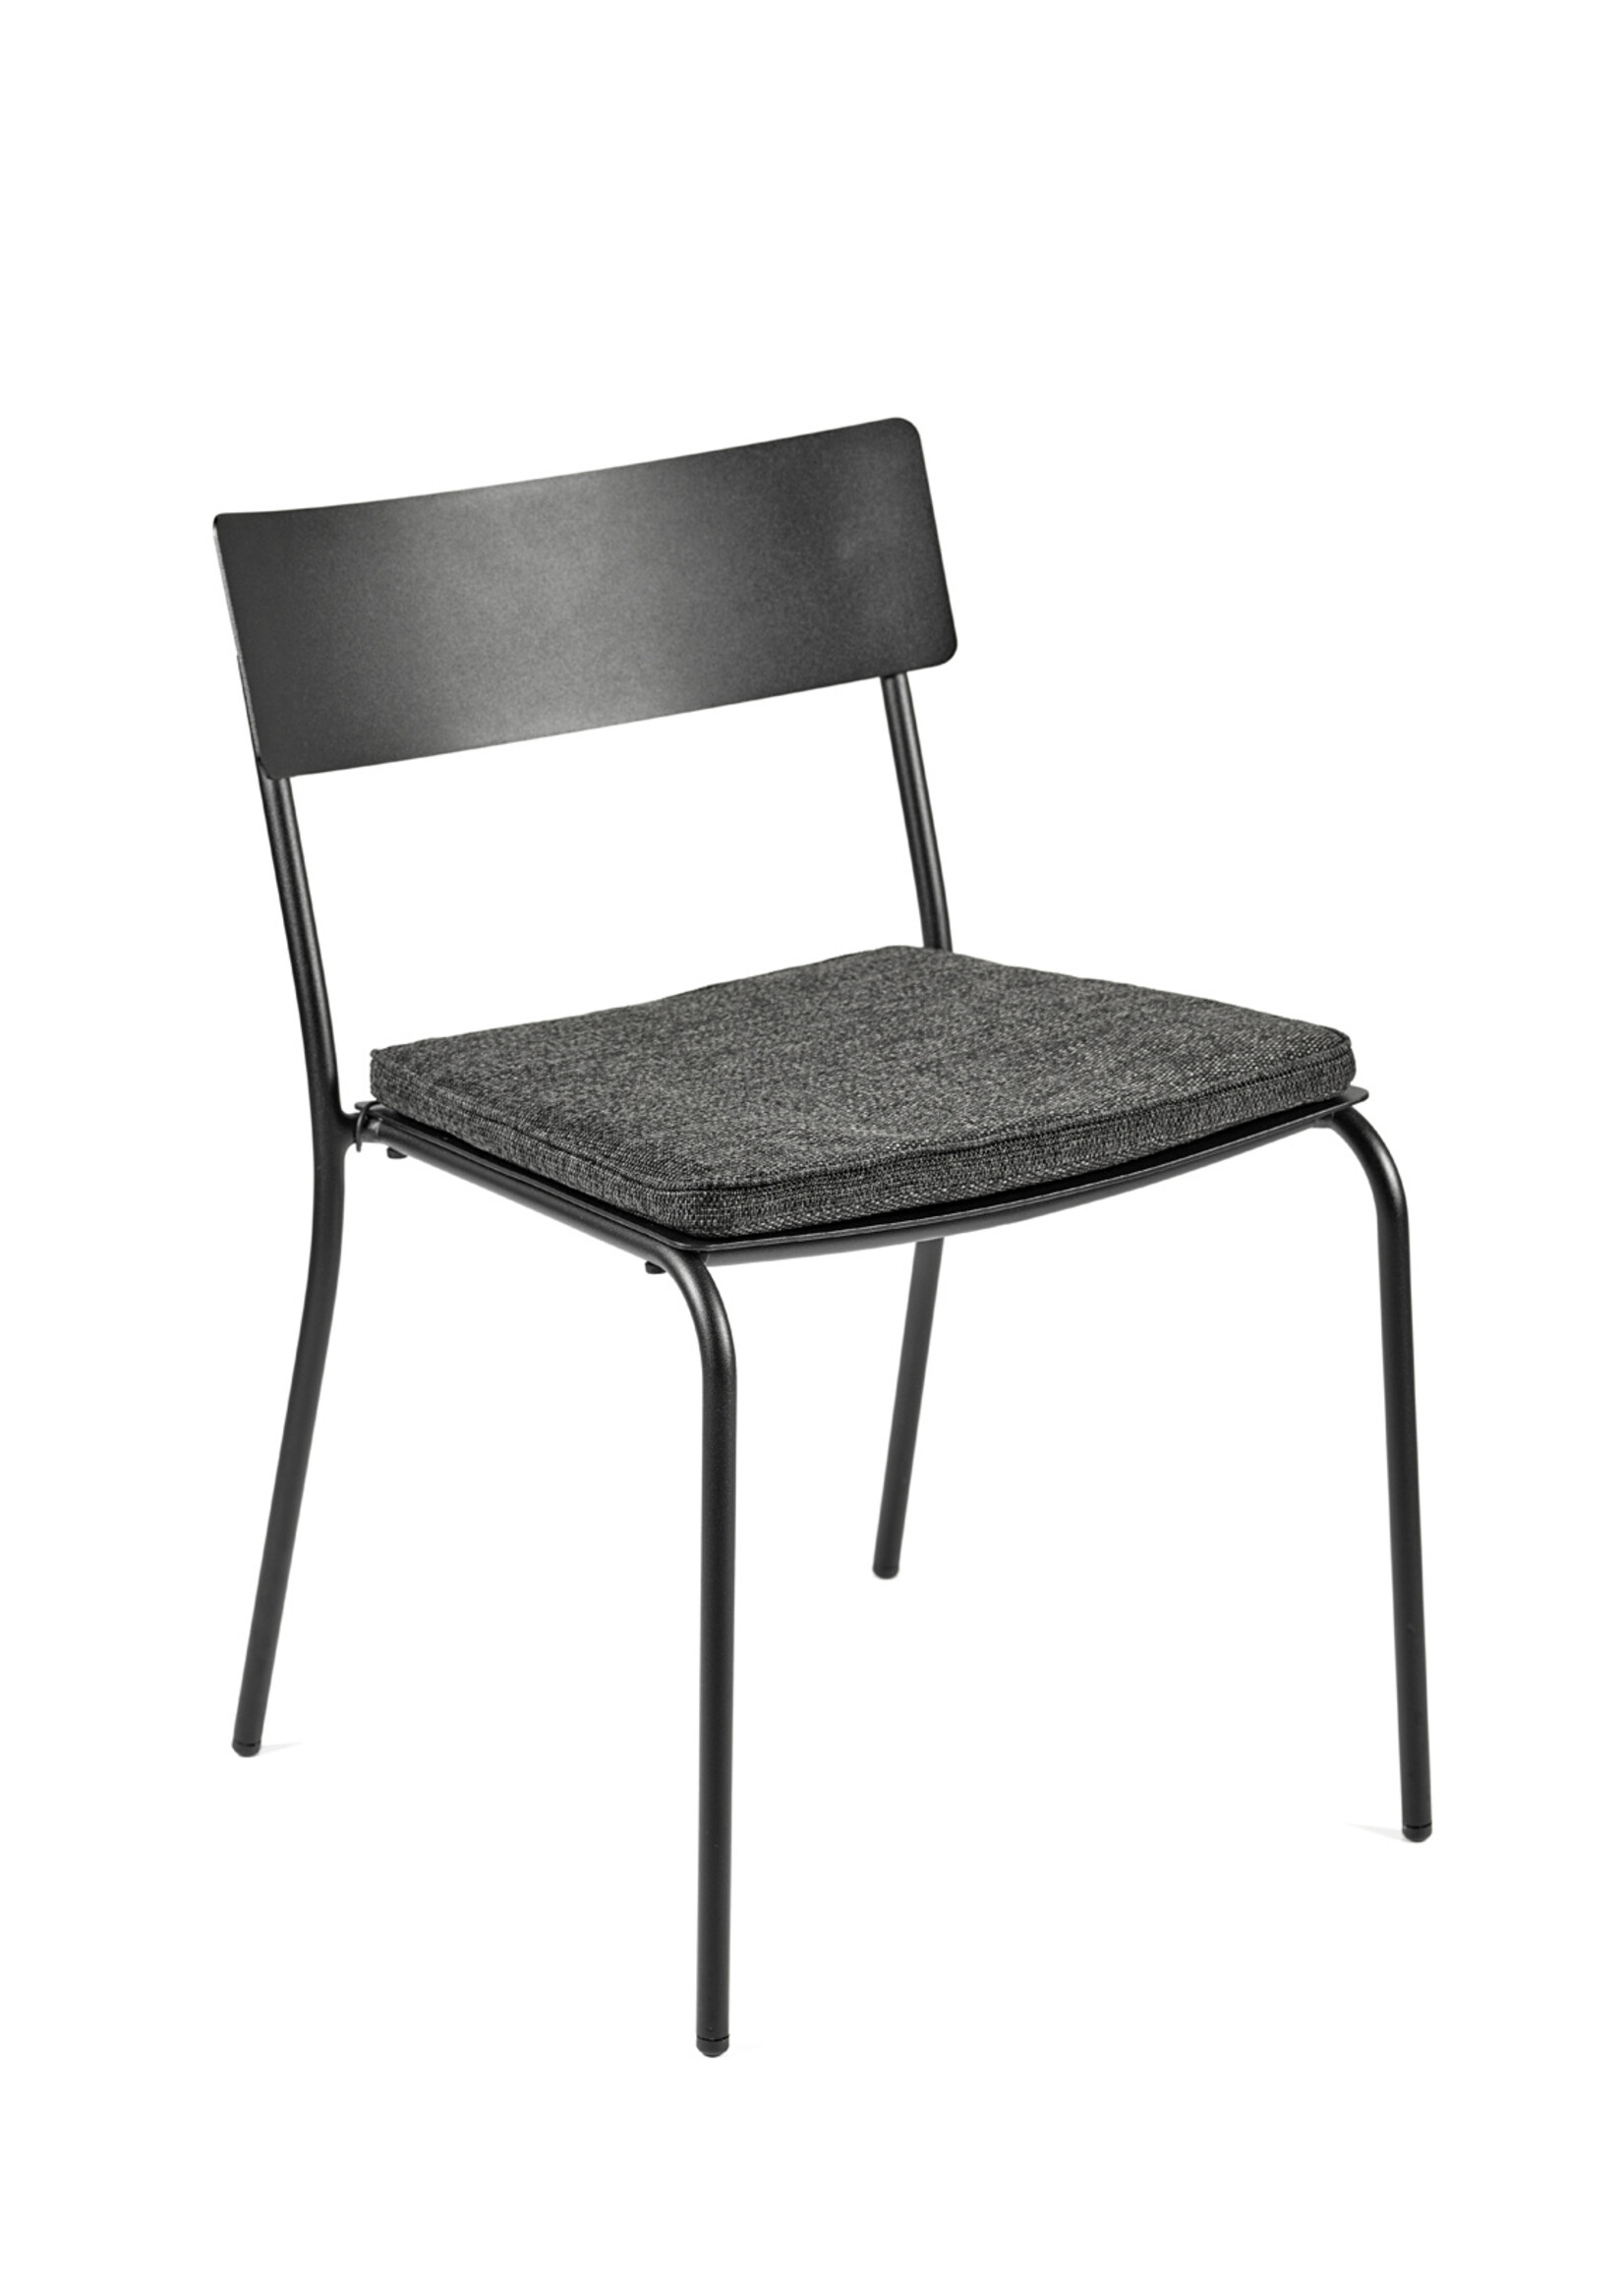 Serax August - Outdoor - Cushion - Chair - Black